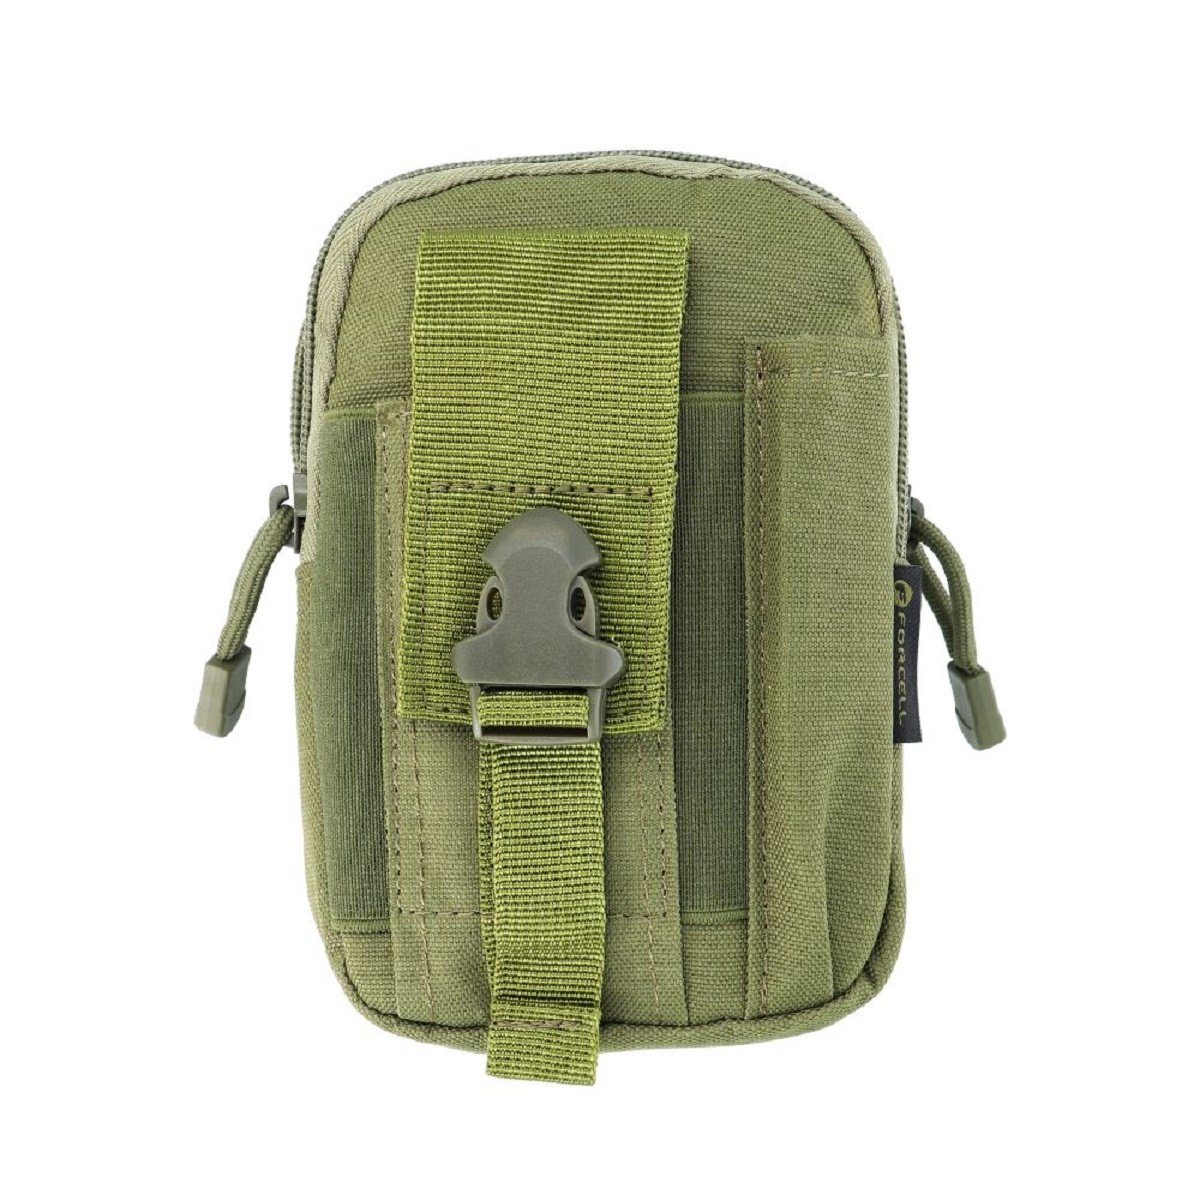 Forcell Wanderrucksack Tasche aus Nylonmaterial für Reisen oder Outdoor-Sportarten Grün